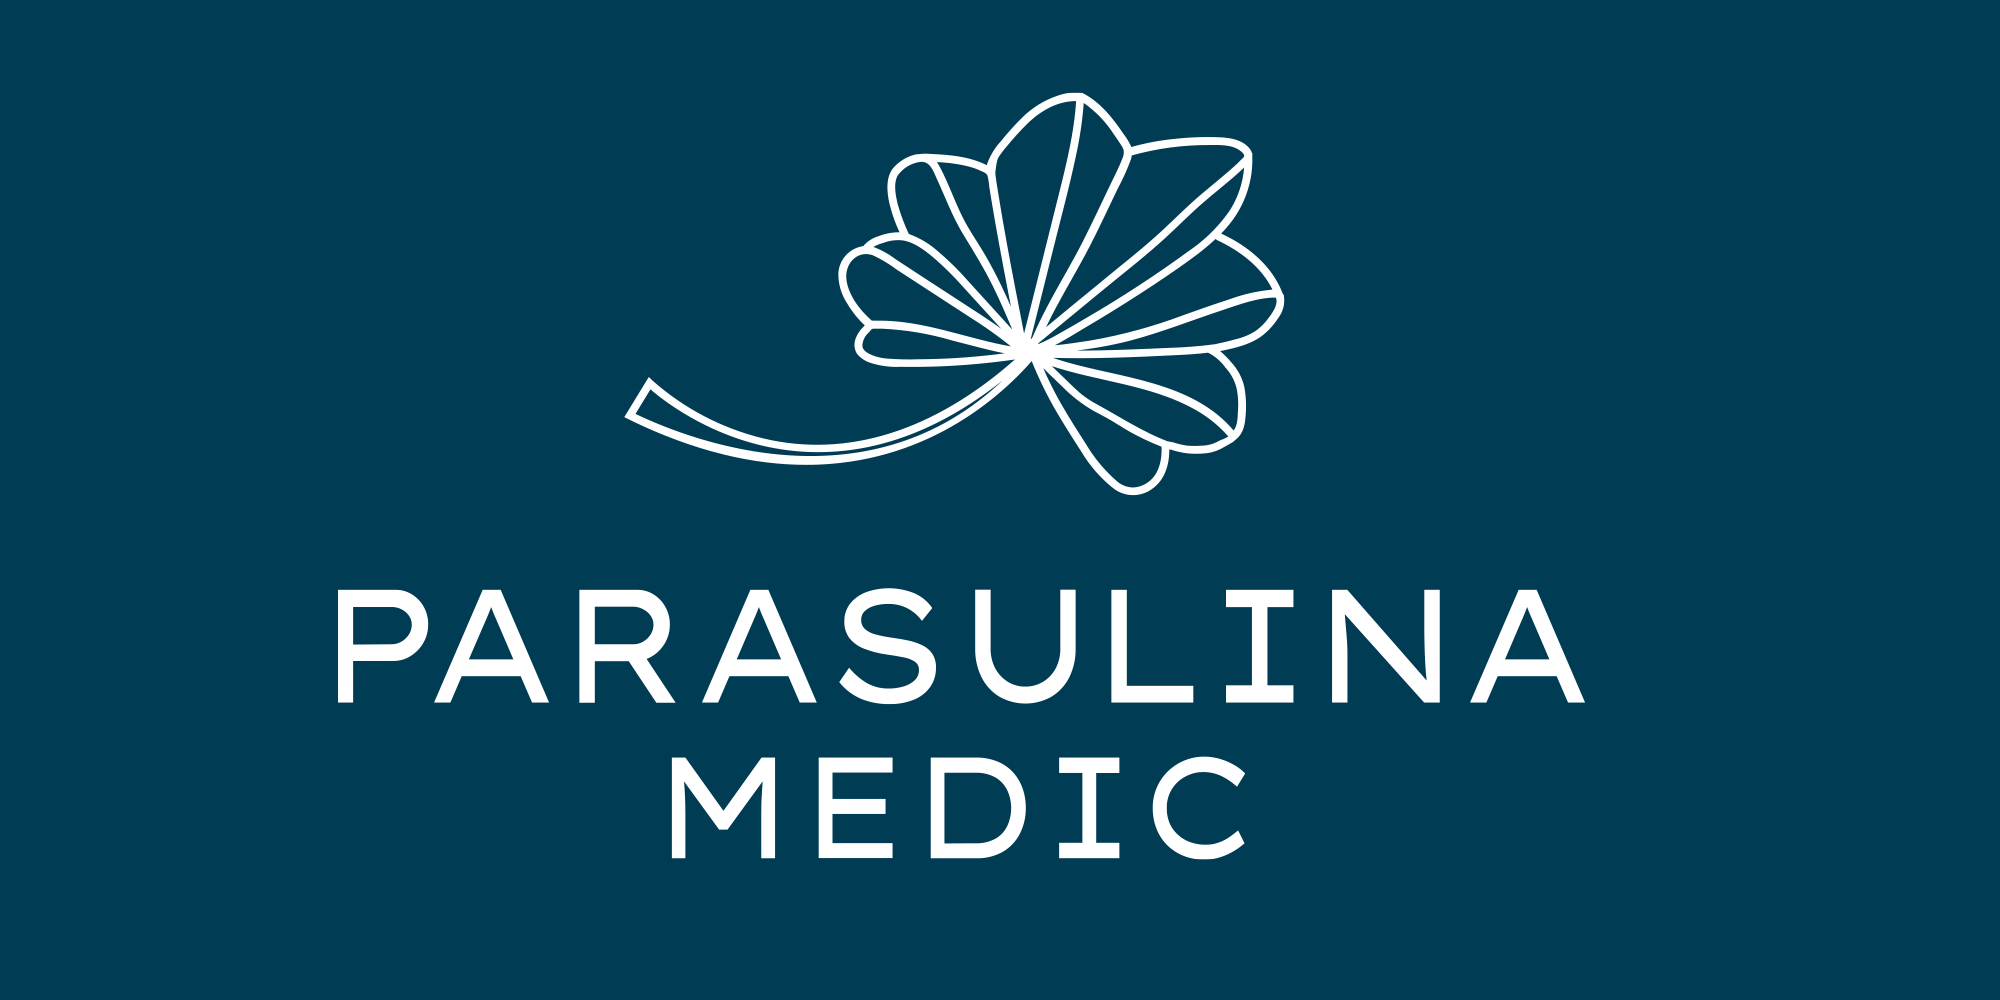 Parasulina Medic – Gynäkologie • Hebamme • Psychosomatik